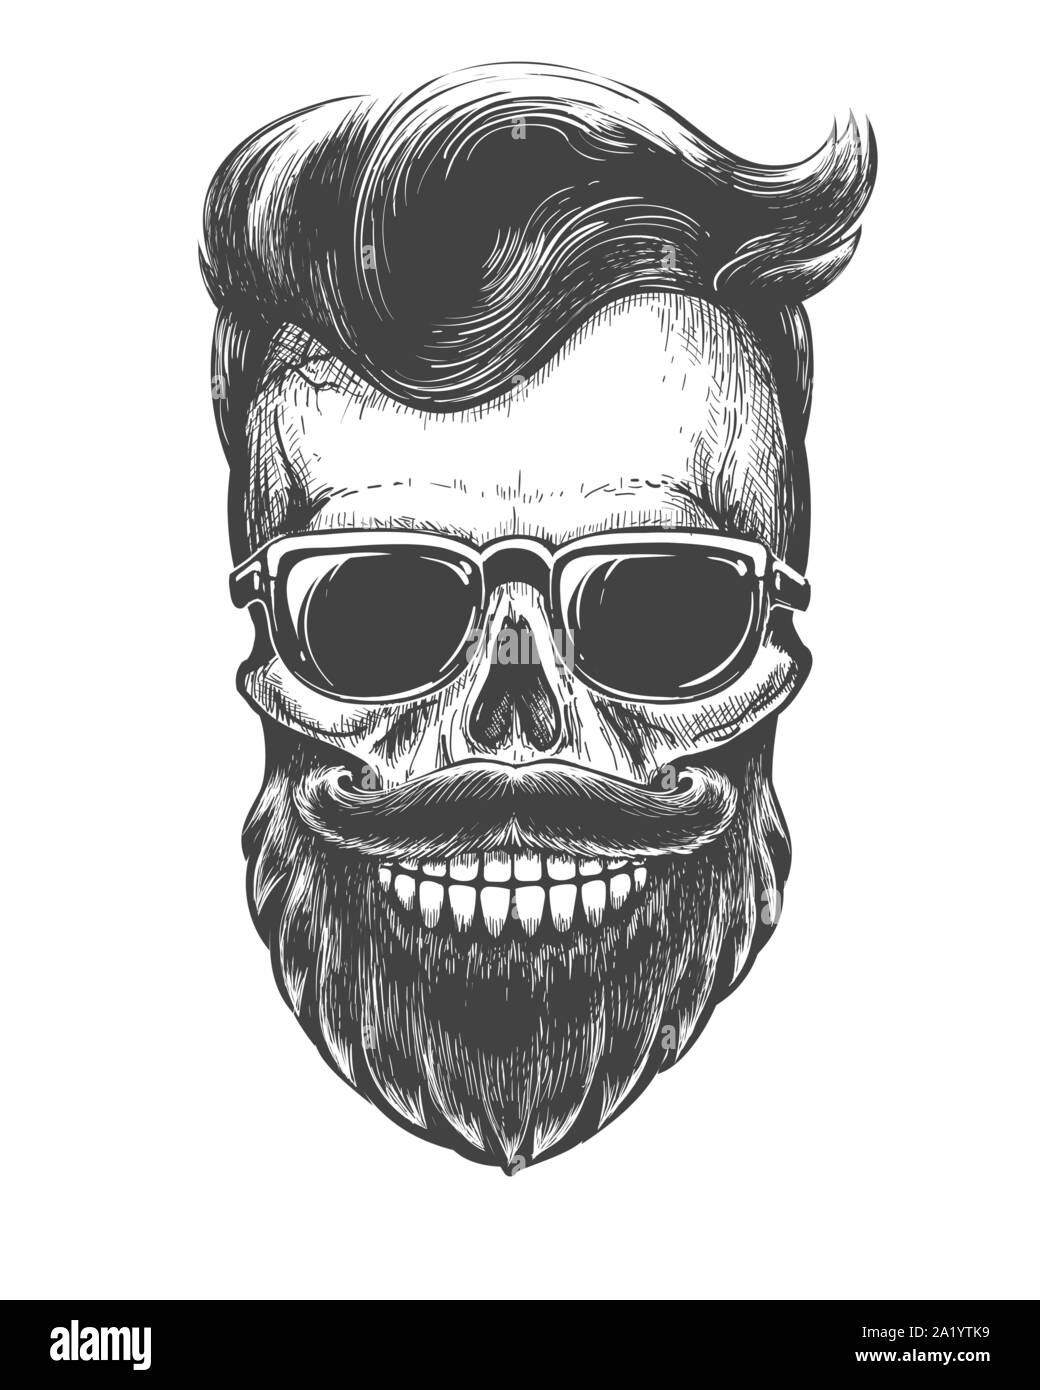 Share 78+ skull beard tattoo latest - thtantai2